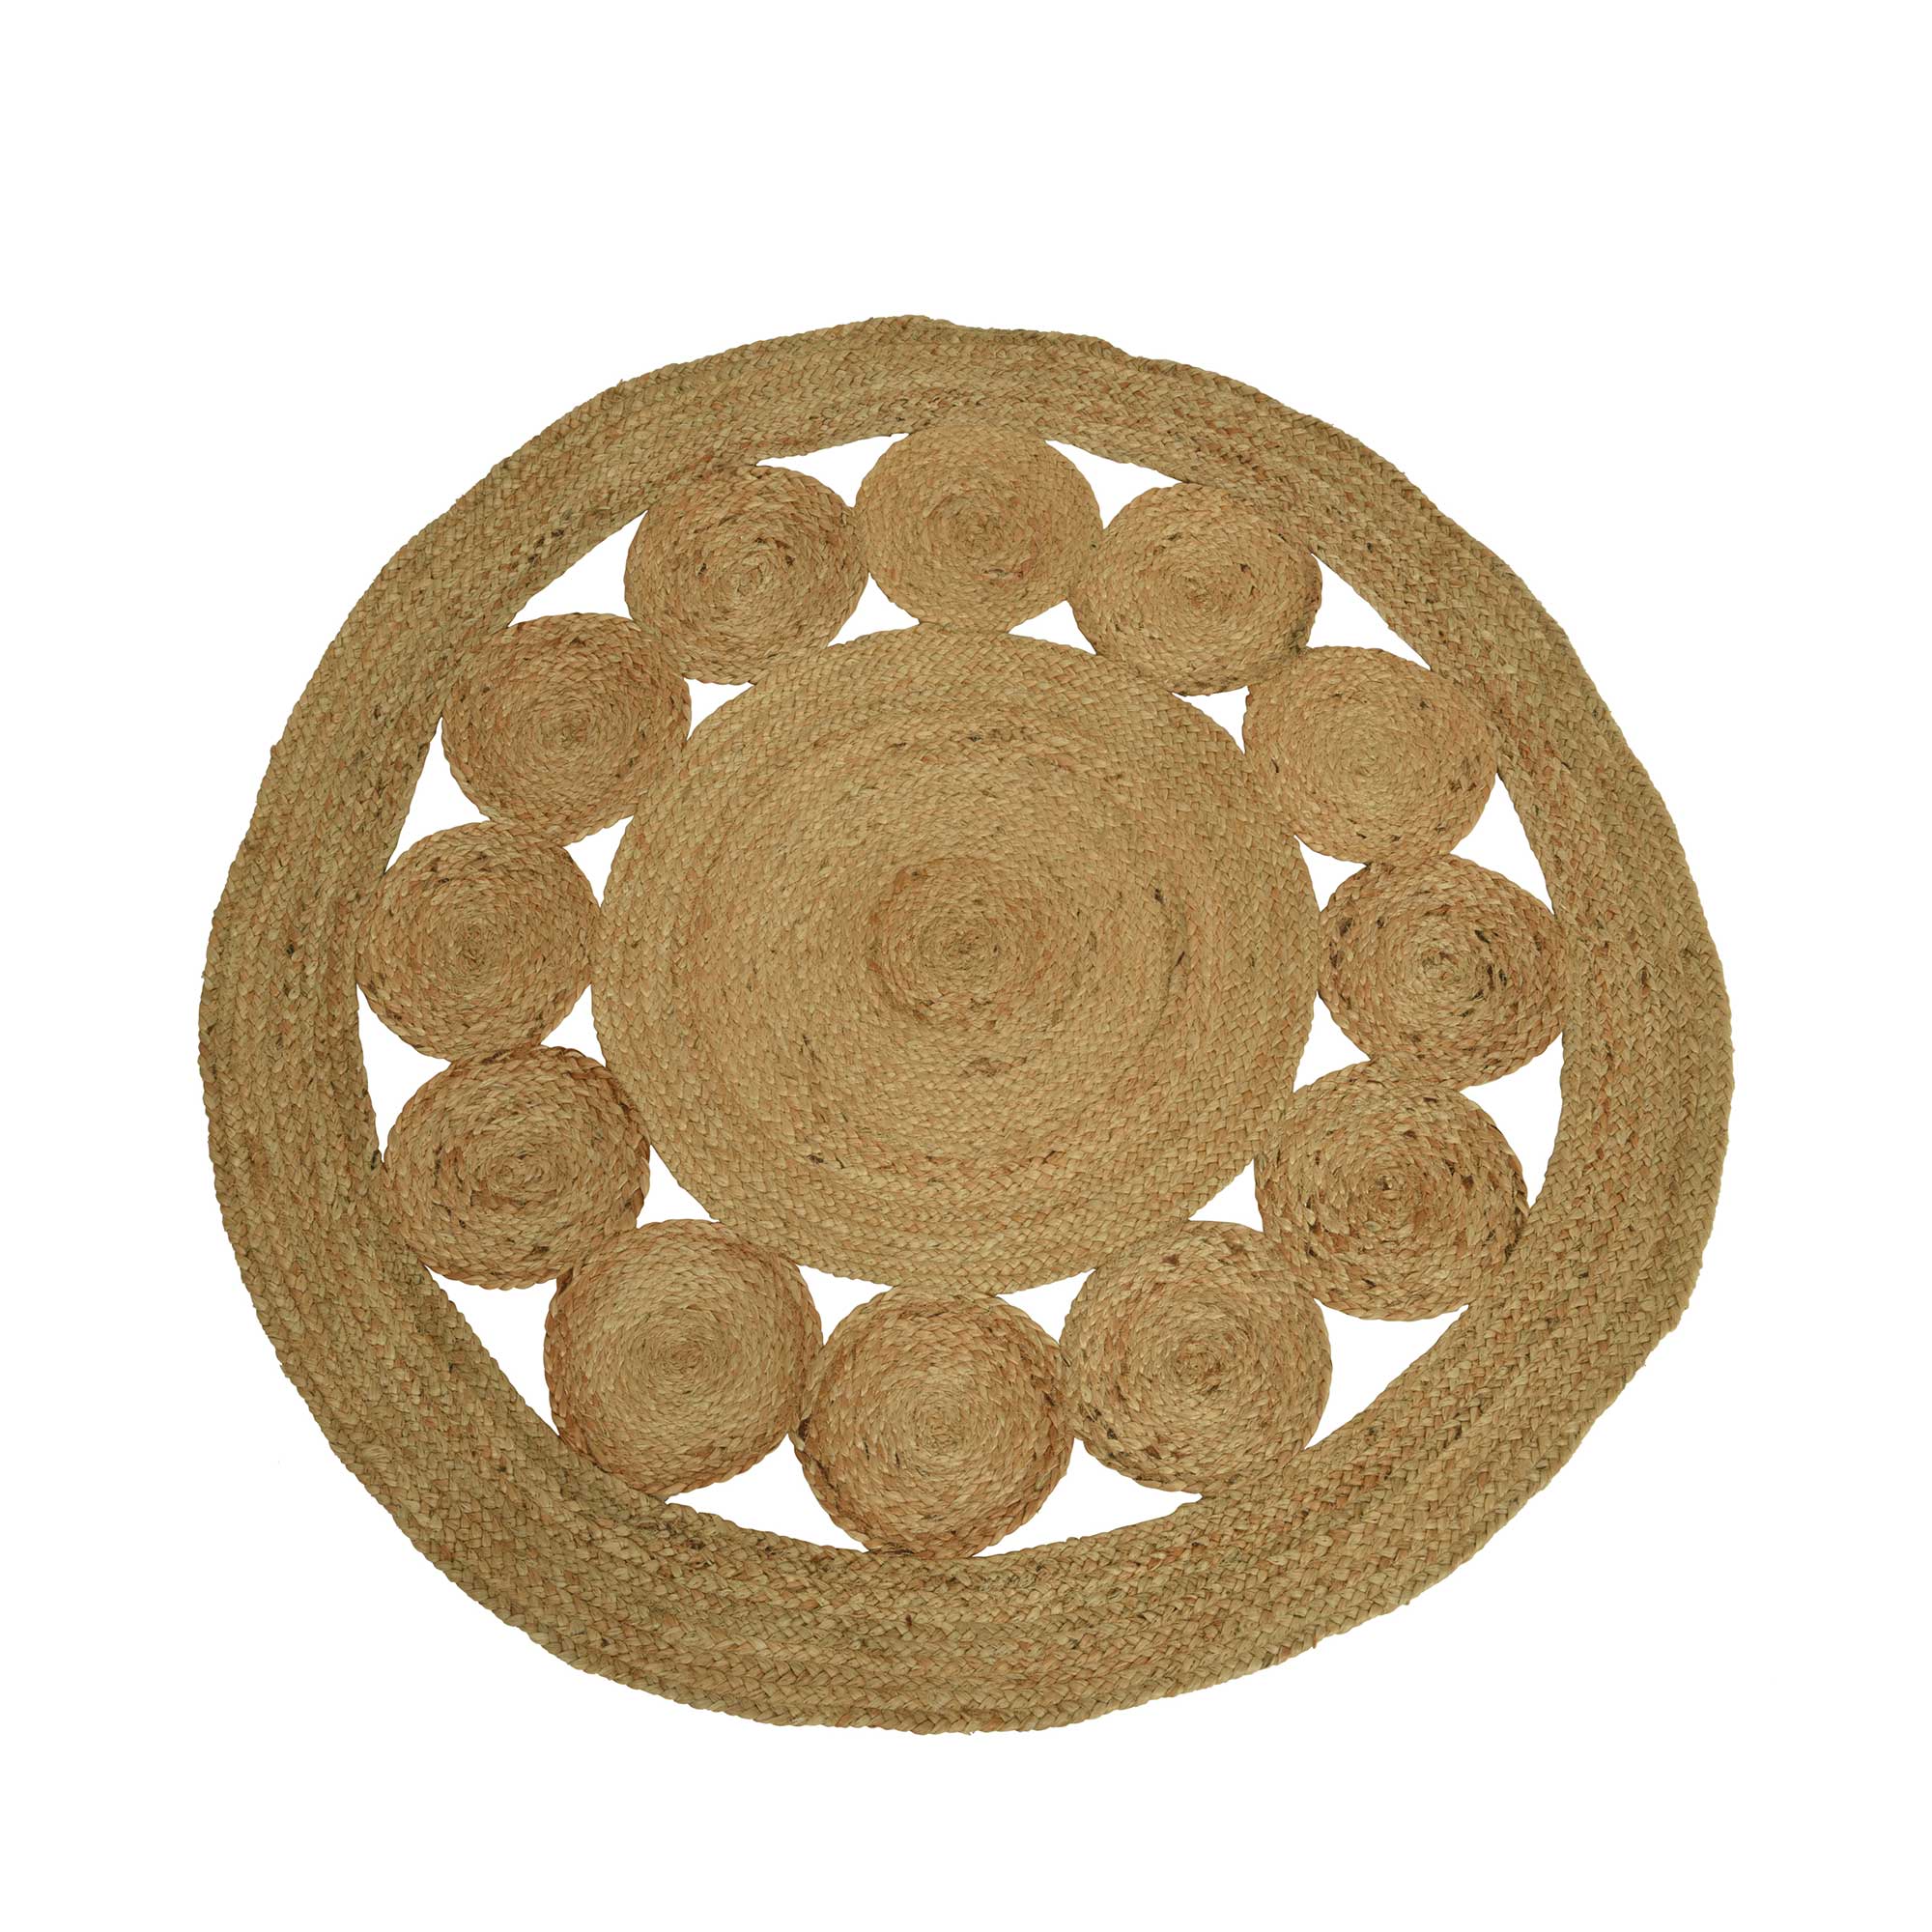 Photo of Circular jute rug in brown